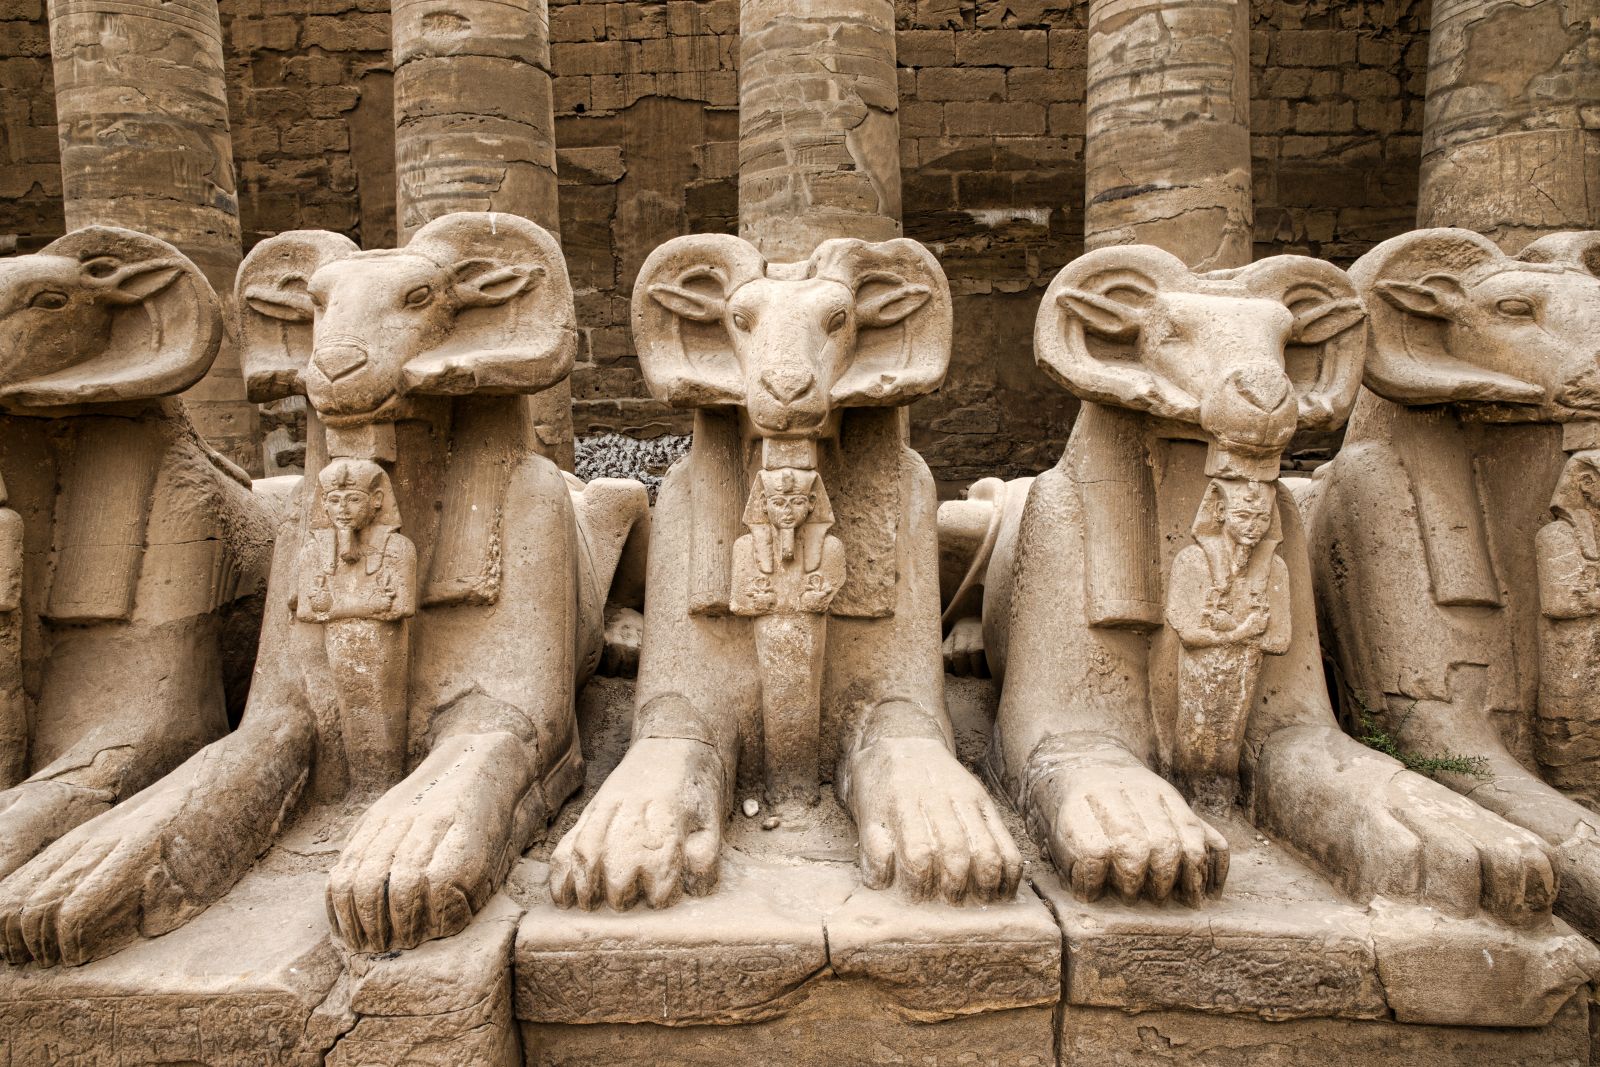 Detailed stonework at Luxor's Karnak Temple in Egypt